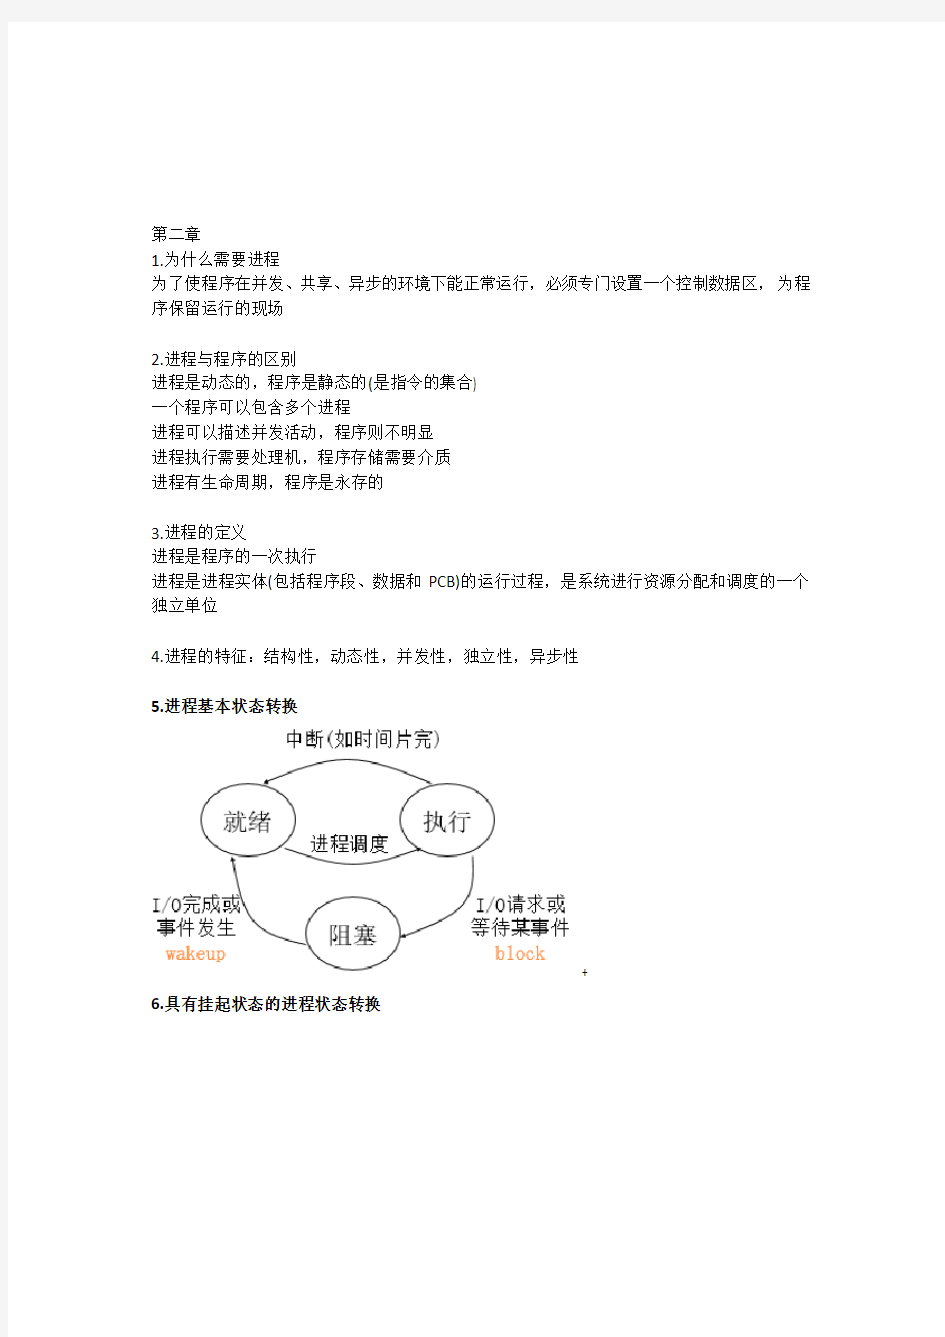 深圳大学操作系统复习提纲-吴少滨整理